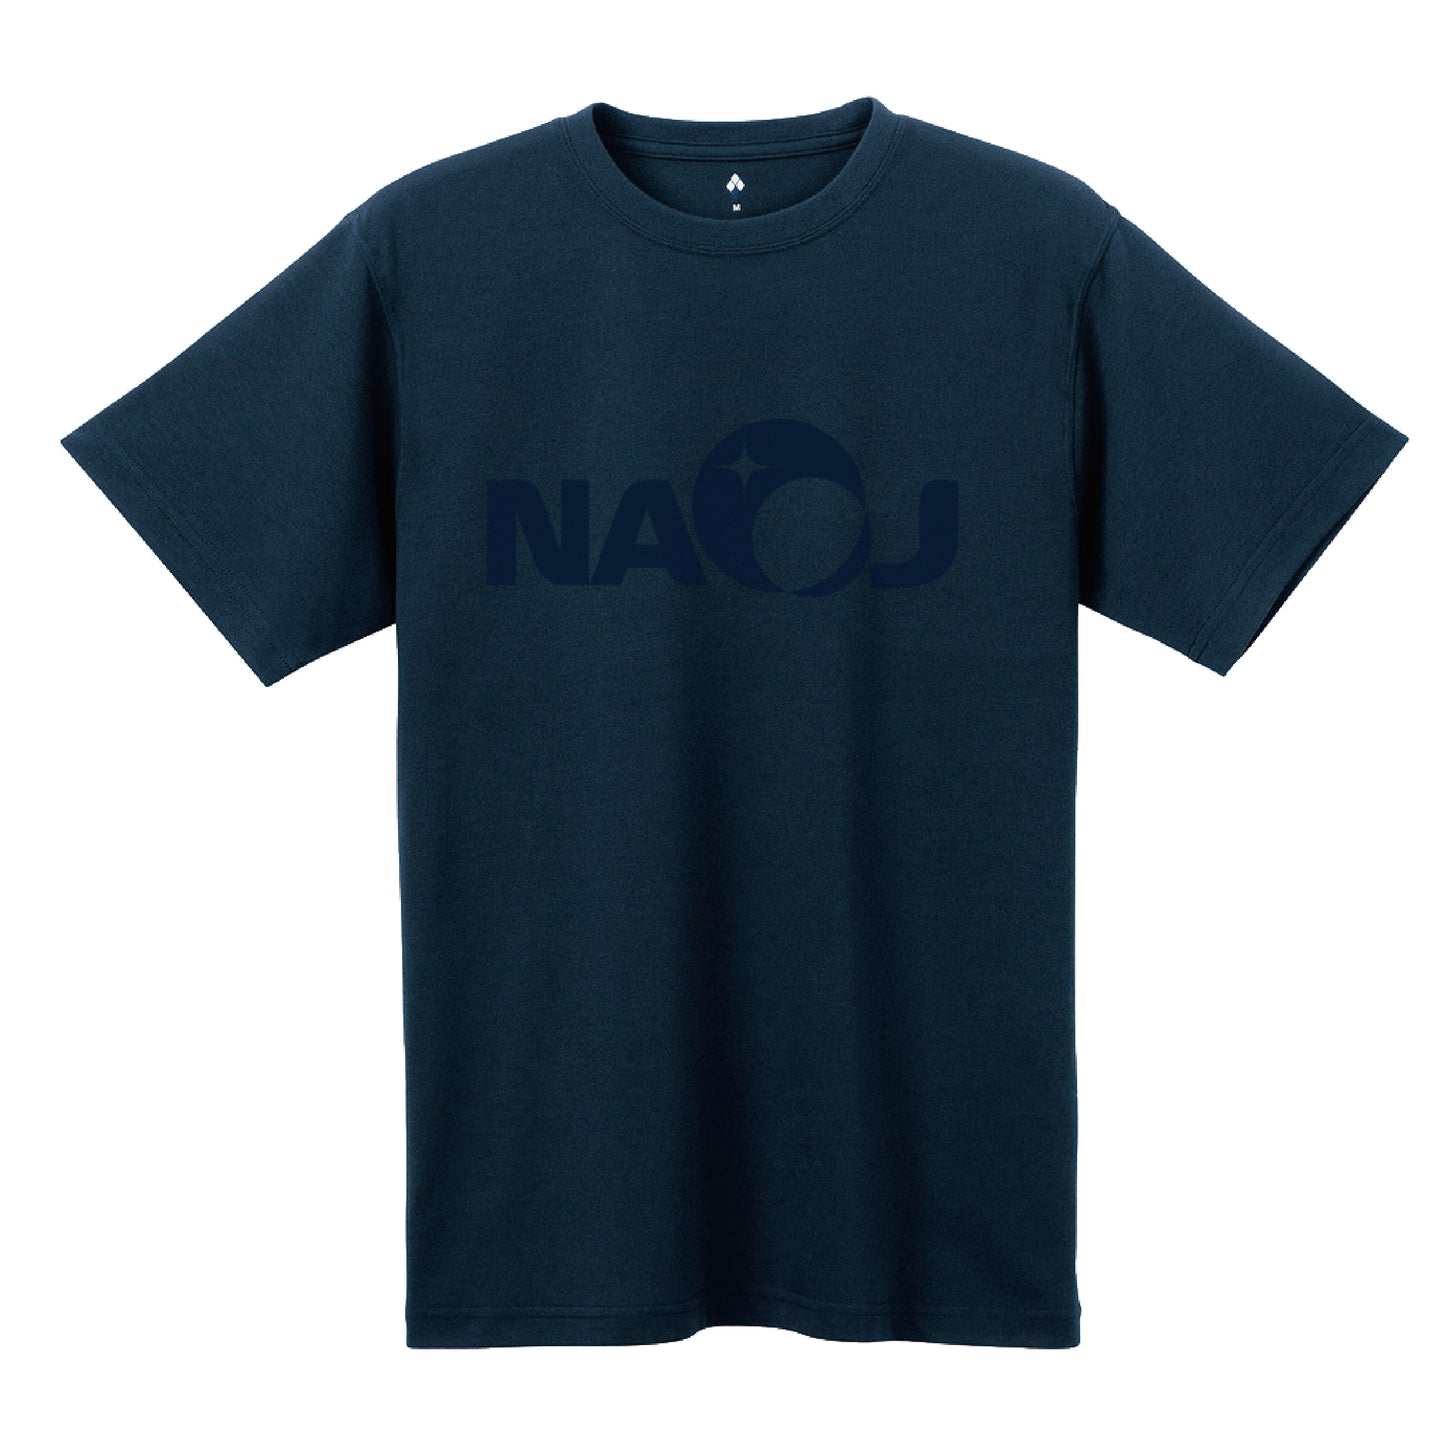 国立天文台 NAOJ ロゴマーク WIC. Tシャツ ネイビー x ネイビー XL 00